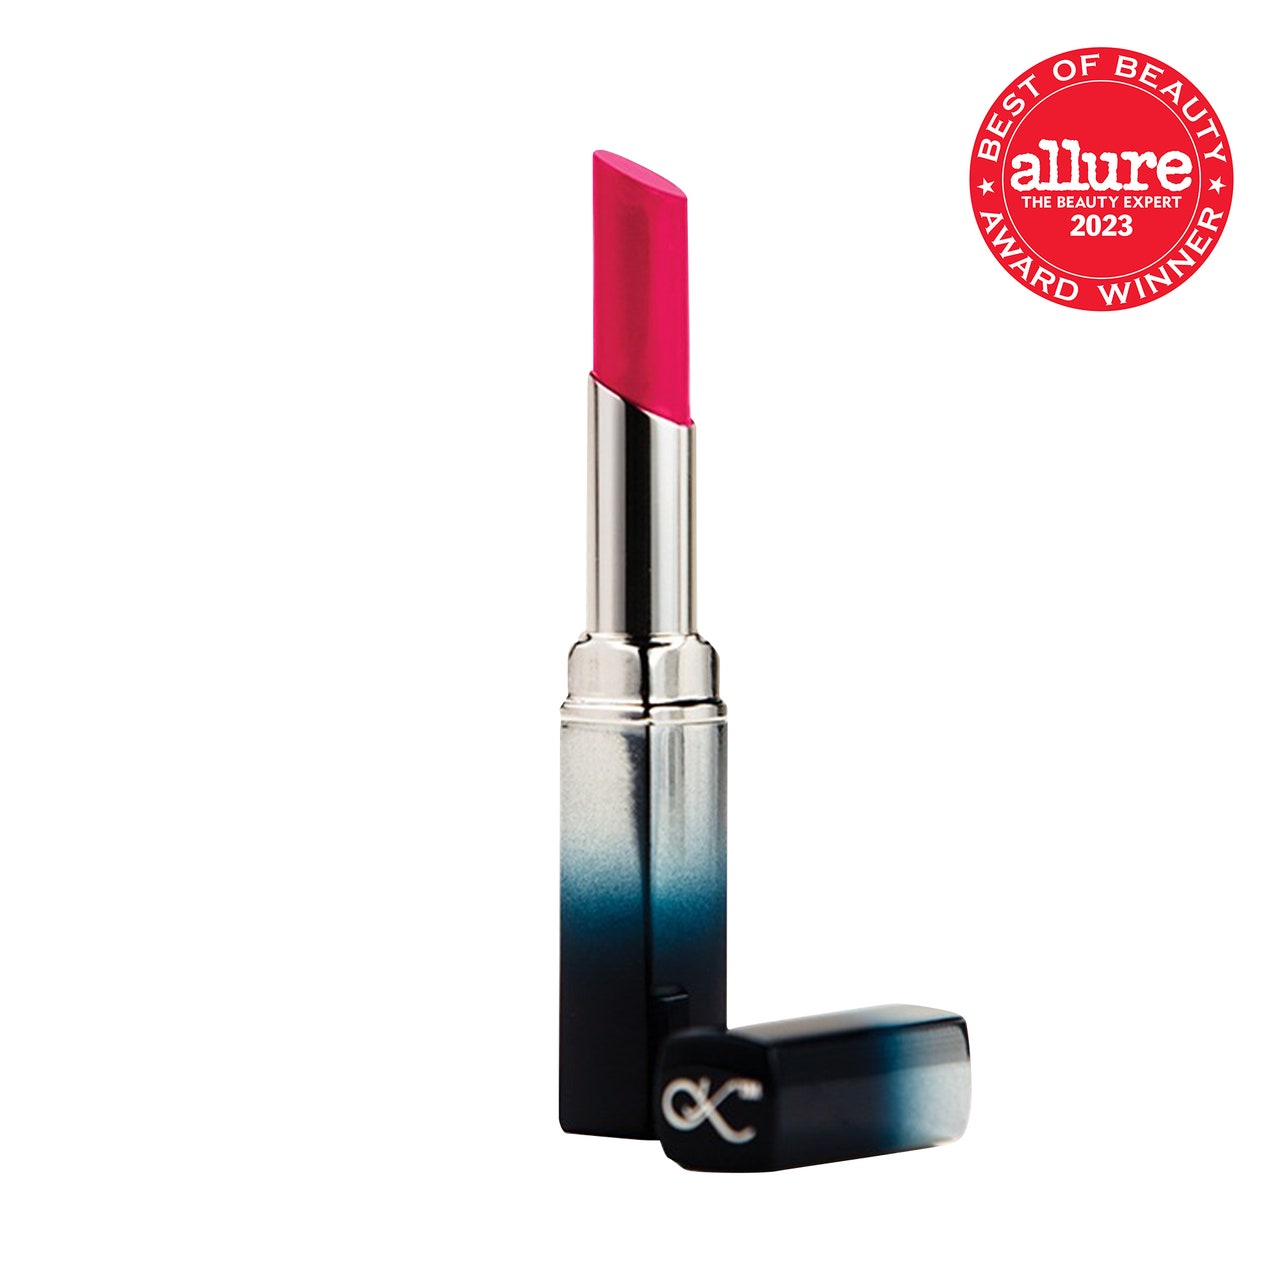 Sunrider International Kandesn Lip Color Tube mit Farbverlauf von Silber zu Marineblau mit leuchtend rosa Lippenstift auf weißem Hintergrund mit rotem Allure BoB-Siegel in der oberen rechten Ecke